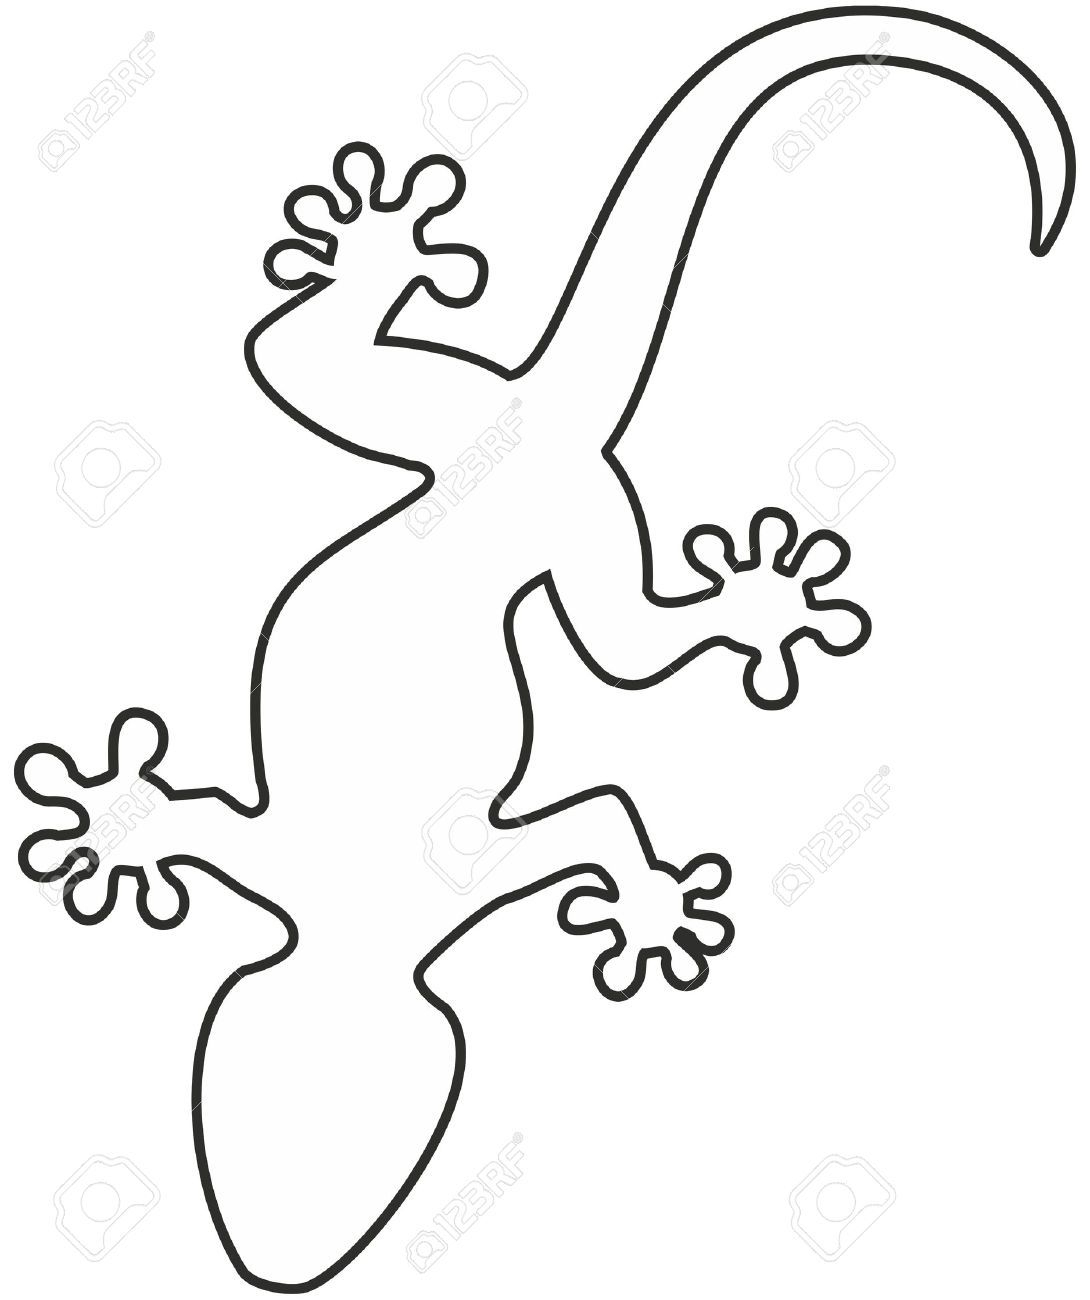 gecko malvorlage  kinderbilderdownload  kinderbilder